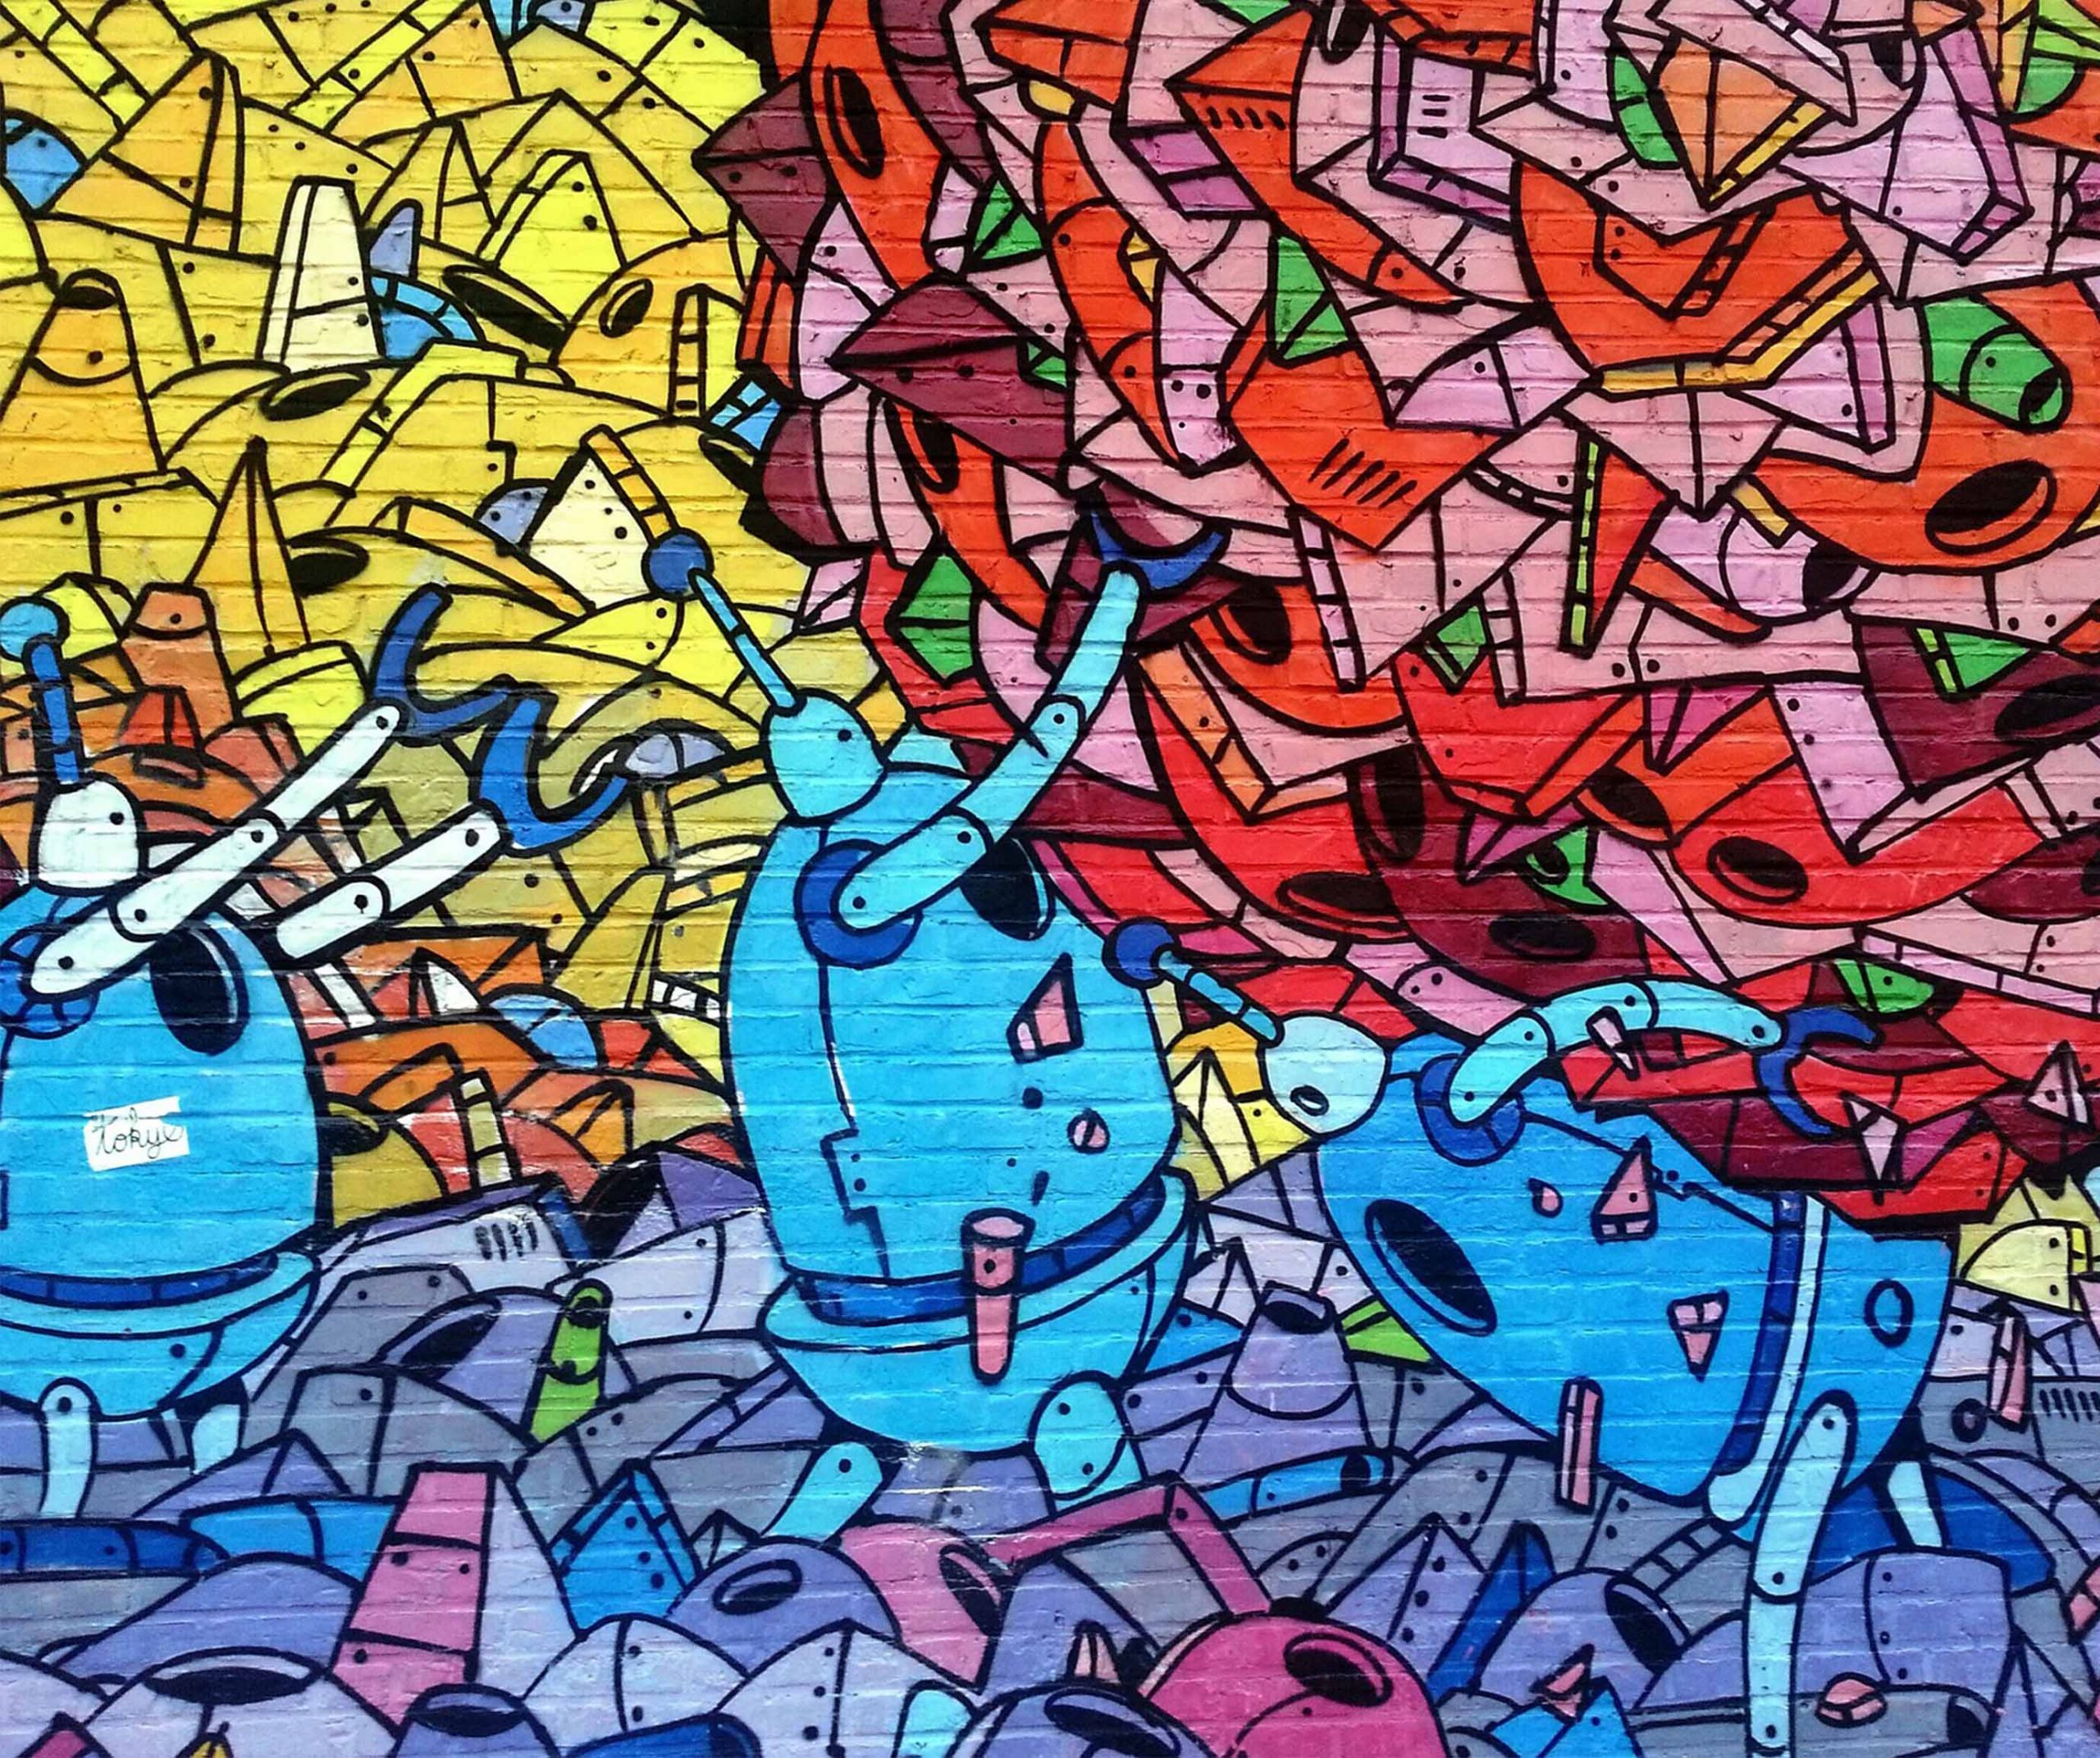 Okresná výtvarná súťaž Graffiti 2019